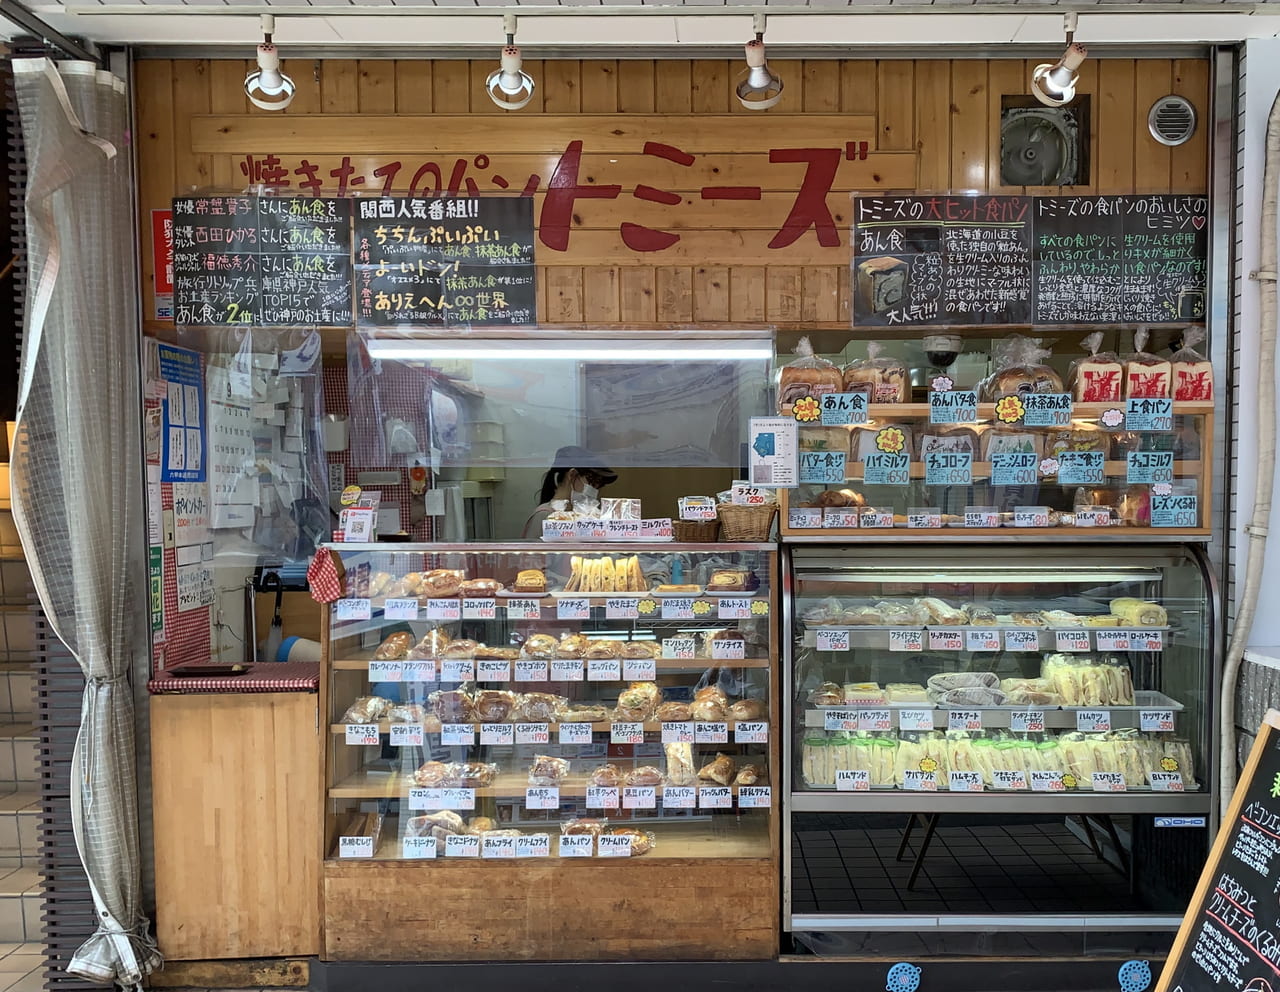 神戸市灘区 東灘区 トミーズのあん食 が 兵庫県人が愛するスイーツとして 秘密のケンミンshowで紹介されるみたい 号外net 神戸市灘区 東灘区